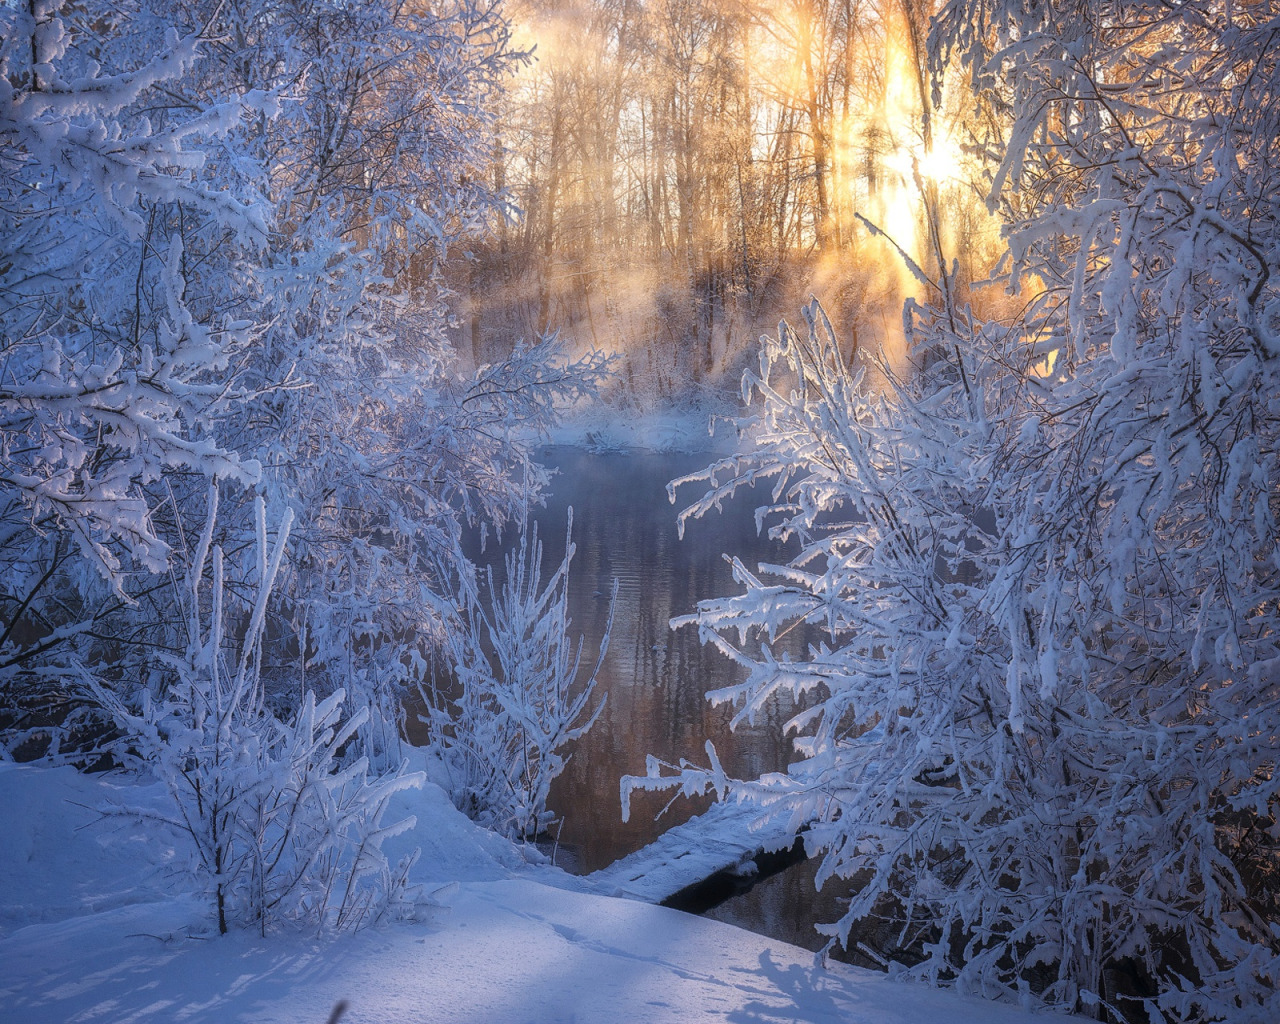 Фф и в морозном лесу навеки останусь. Зимняя сказка. Красивый зимний лес. Утро в зимнем лесу. Сказочный зимний лес.